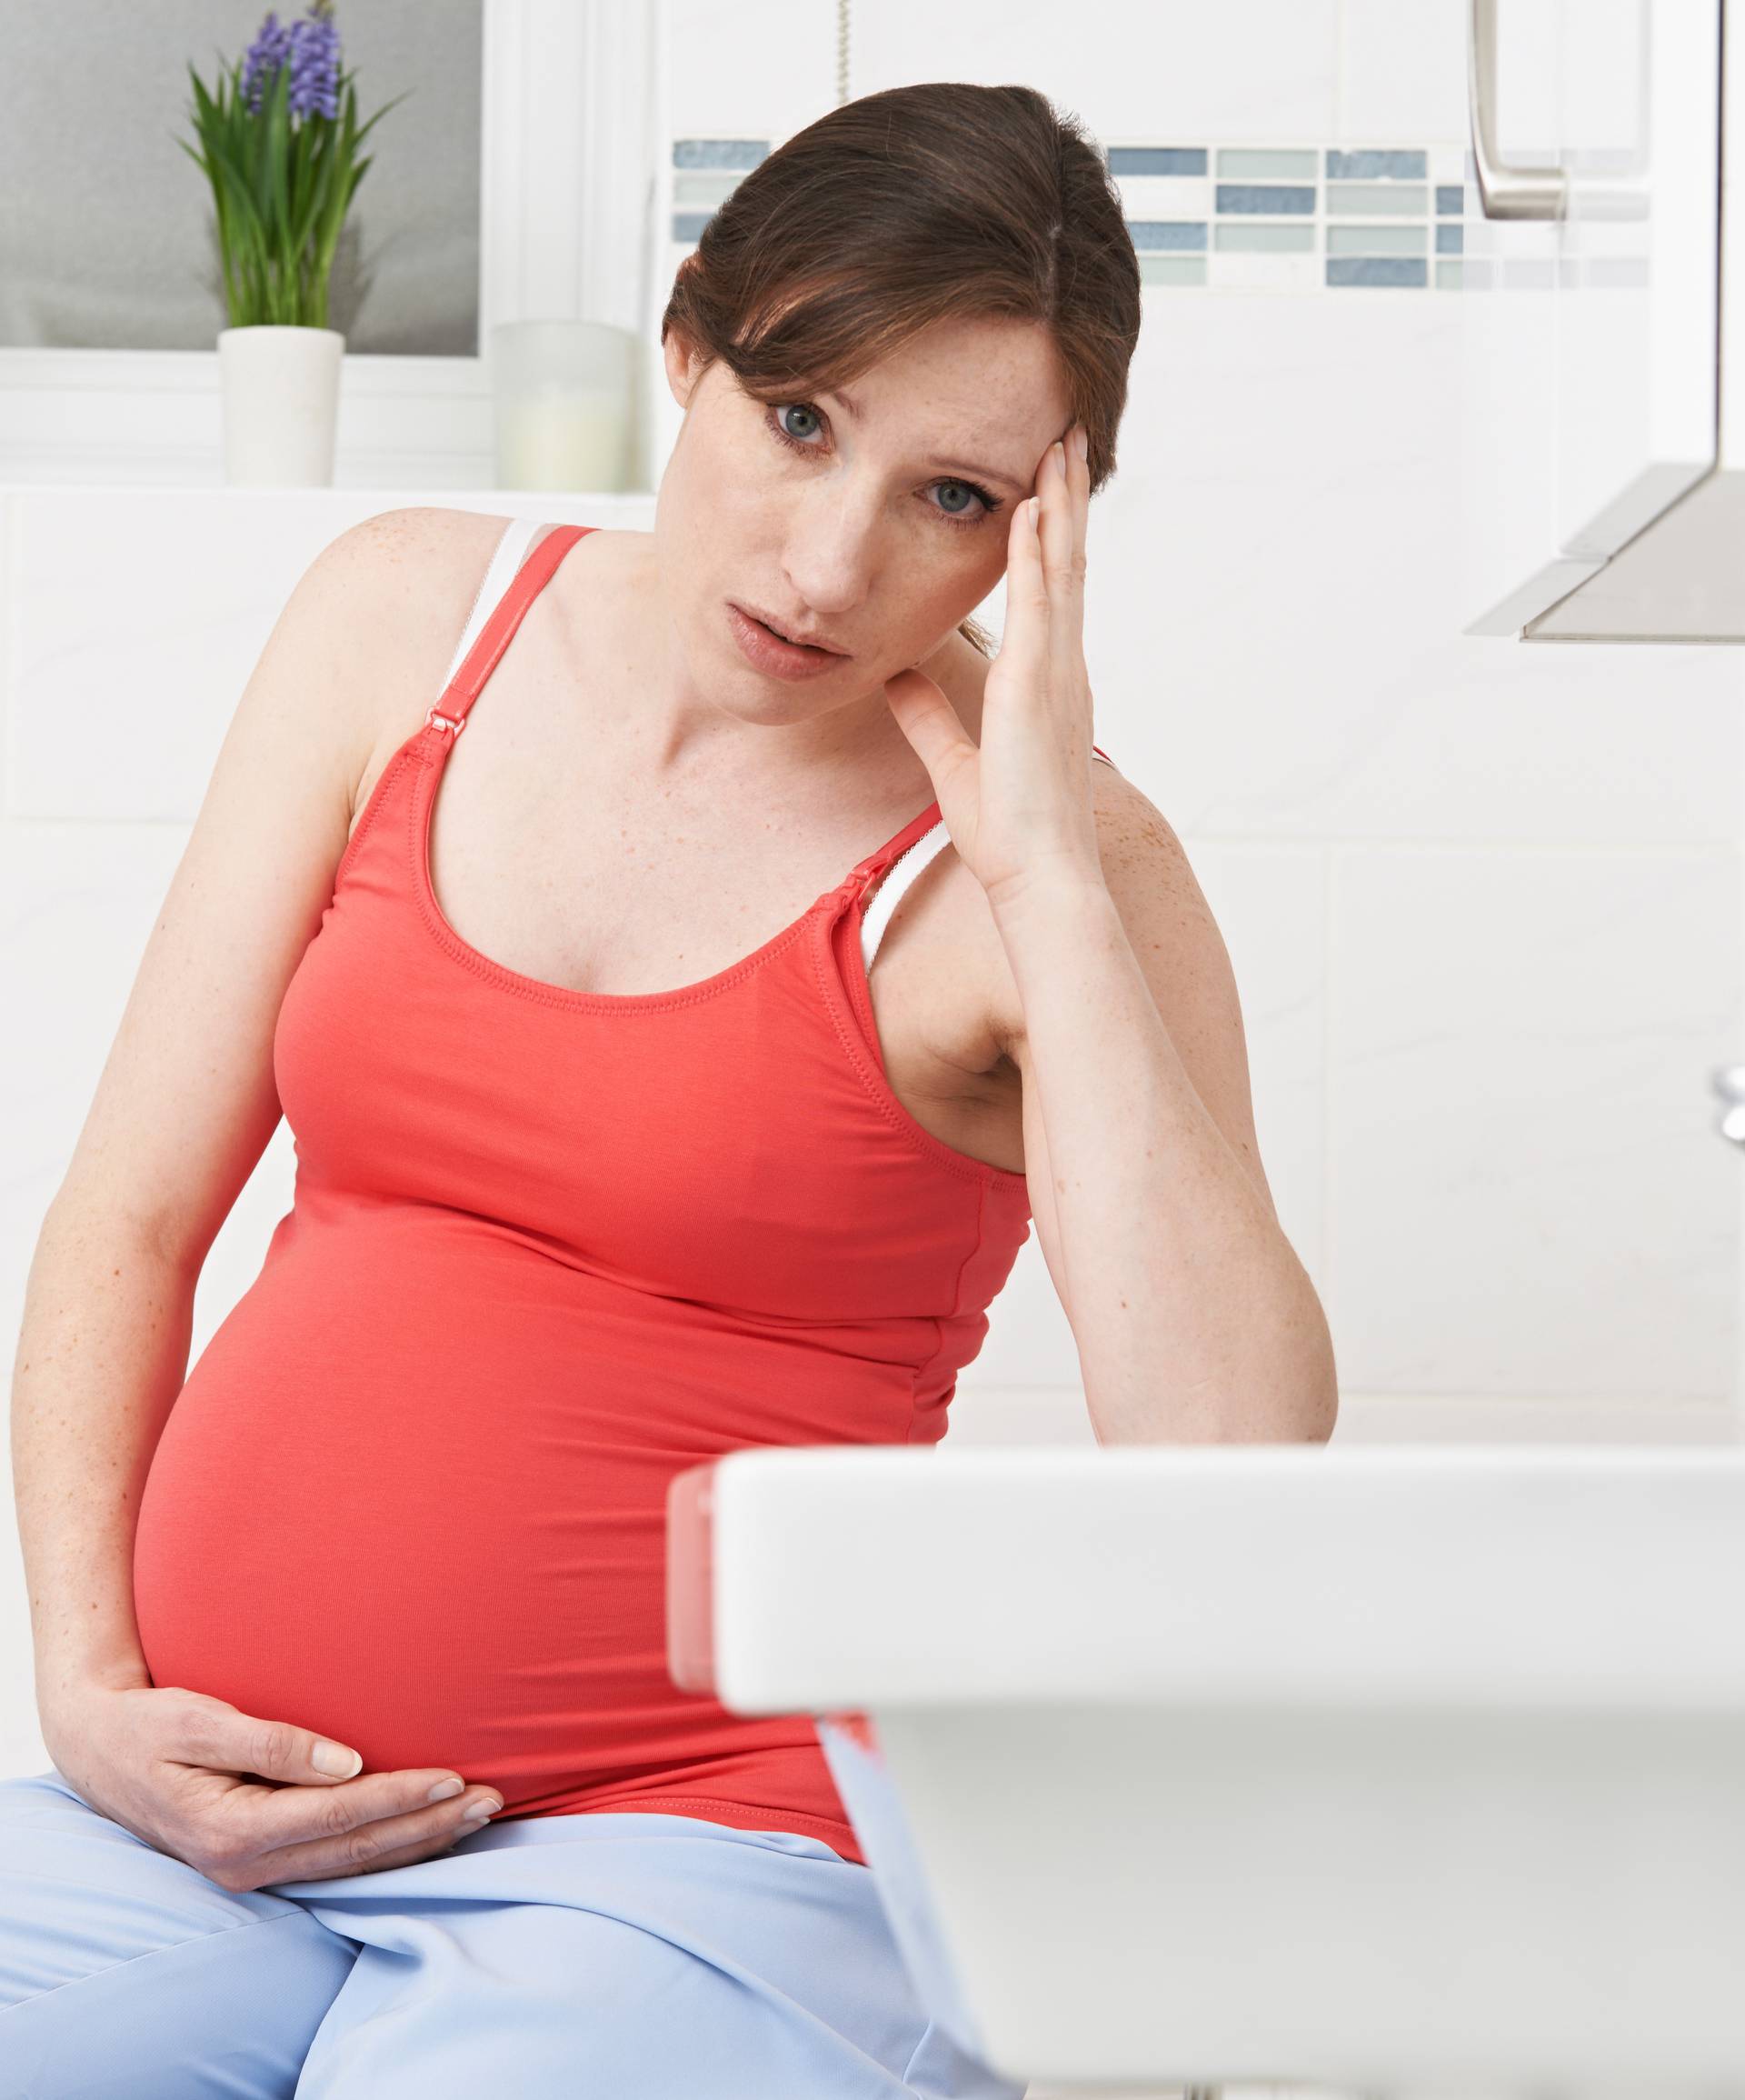 Česta kemikalija iz okoliša može biti opasna za trudnice